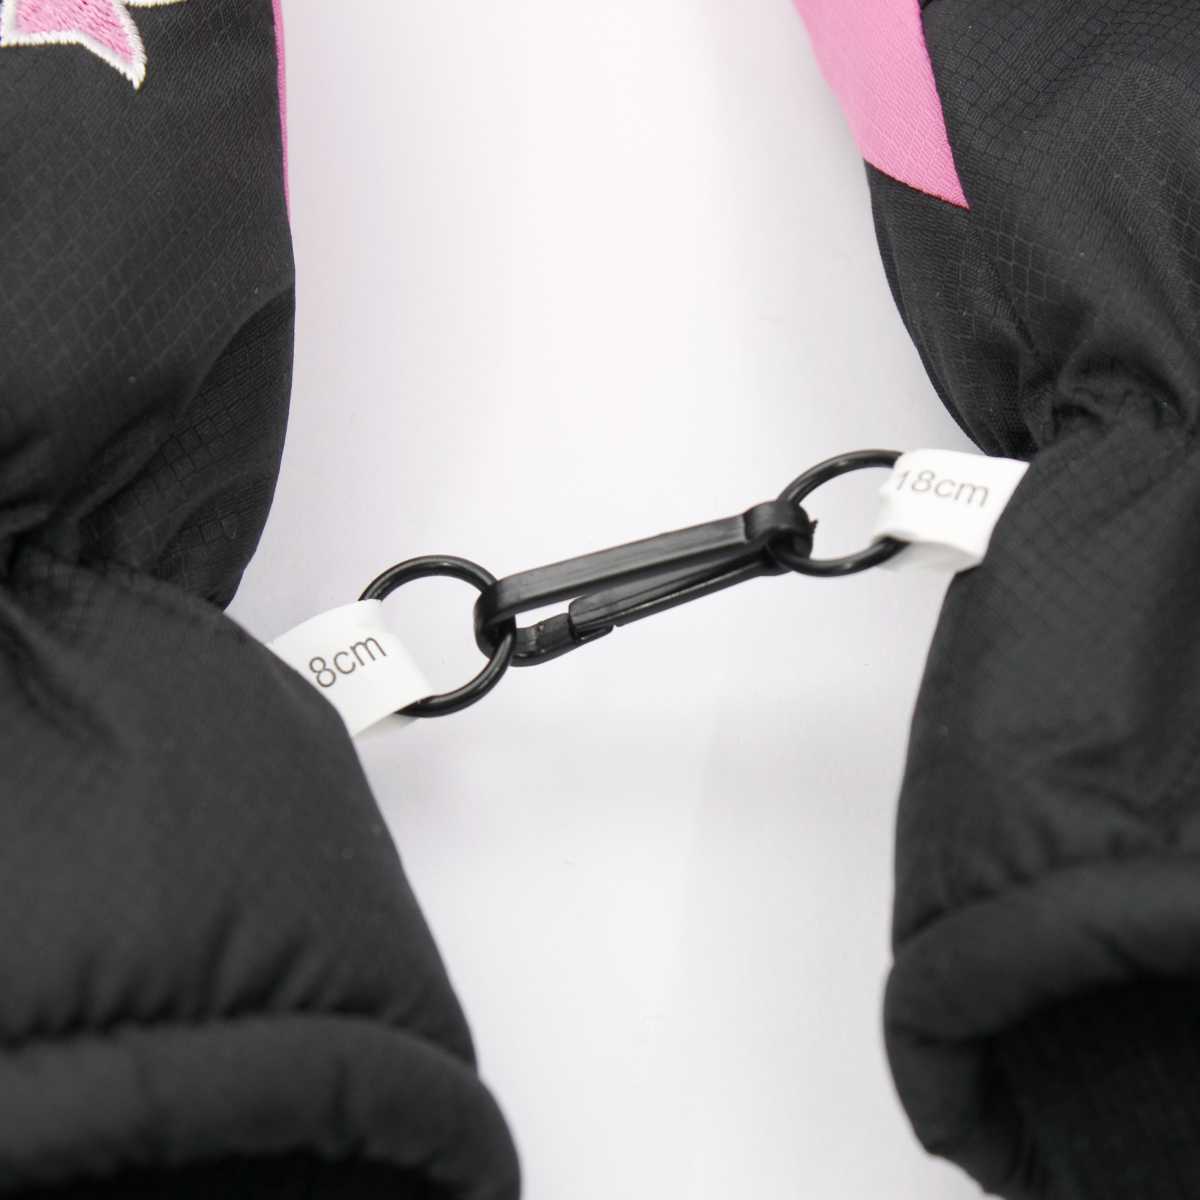 女の子 ジュニア リボン柄 スキーグローブ 五本指手袋 手袋 グローブ 雪遊び 女児 子供用 (ブラック 18サイズ 19サイズ 20サイズ) ガールズ ジュニア スキーウェア 全3色